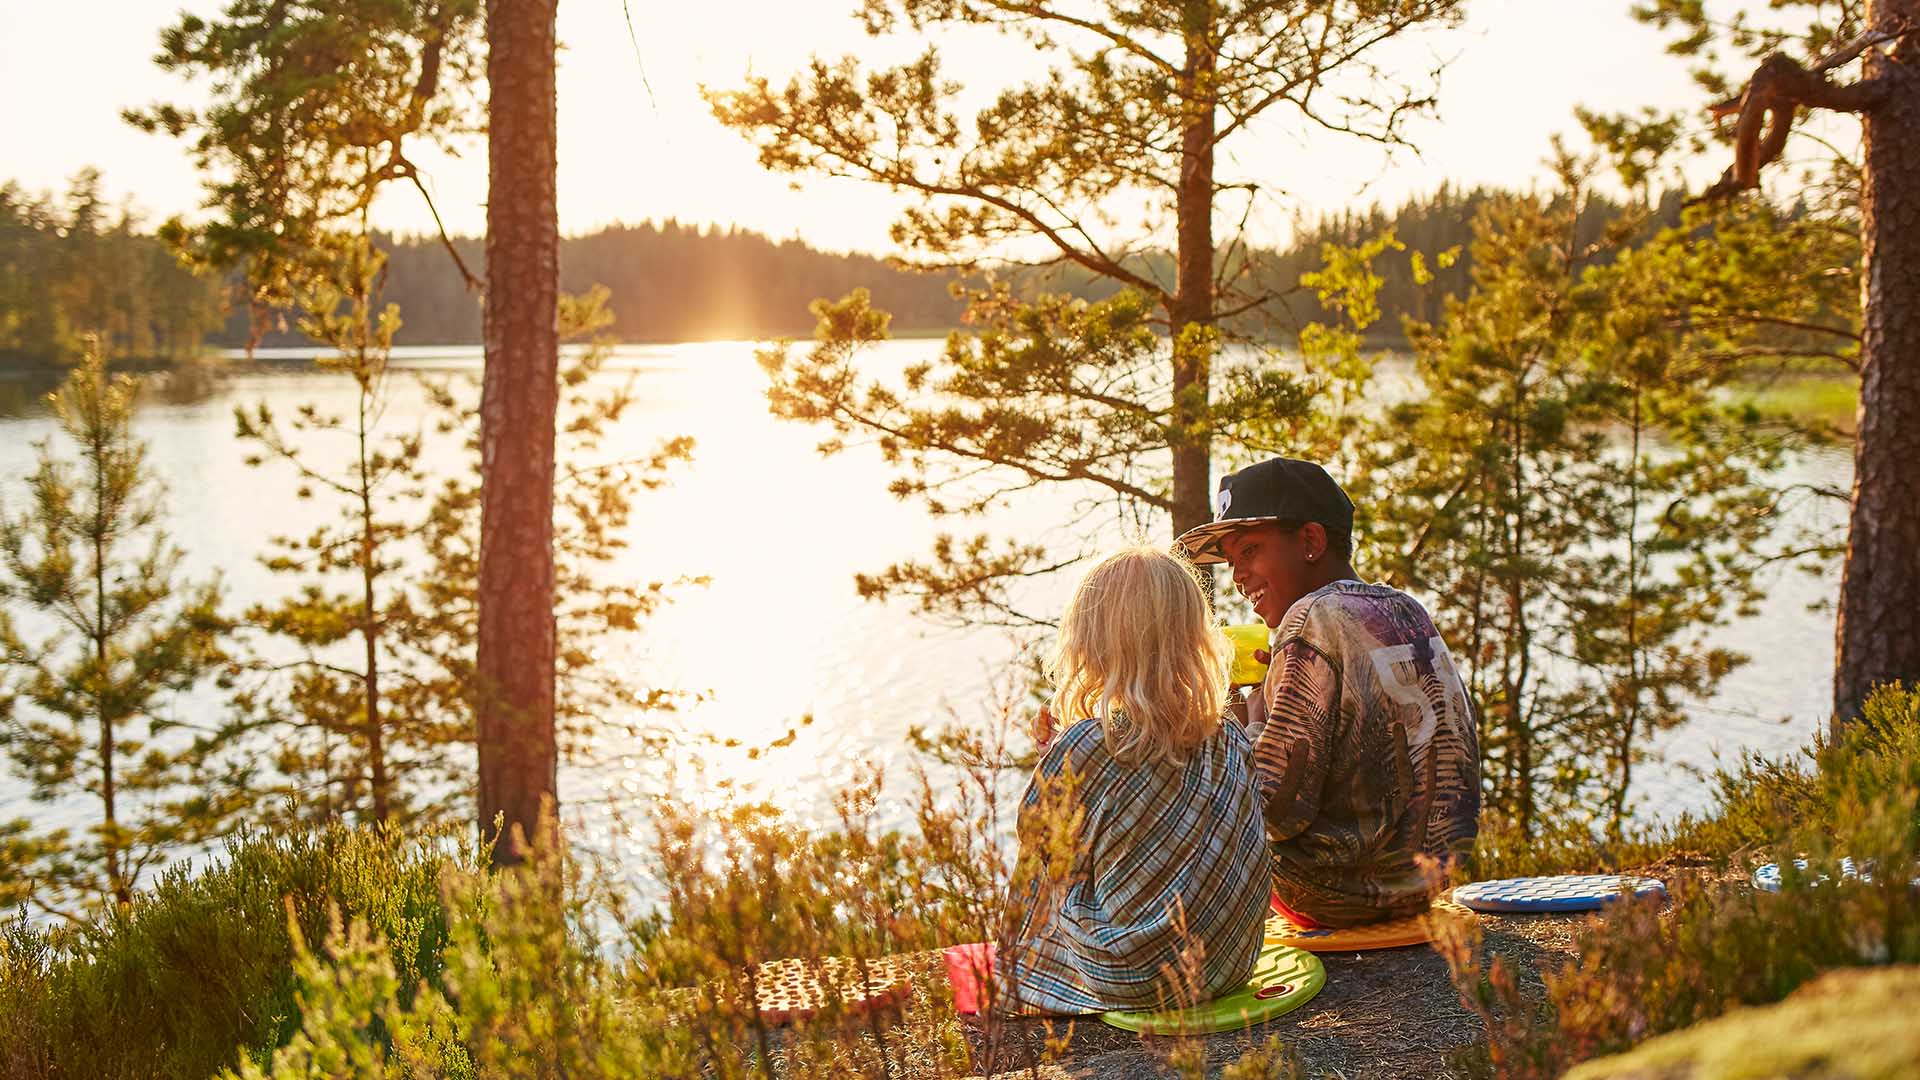 Enjoying the outdoors in Kristinehamn, Sweden ©Clive Tompsett